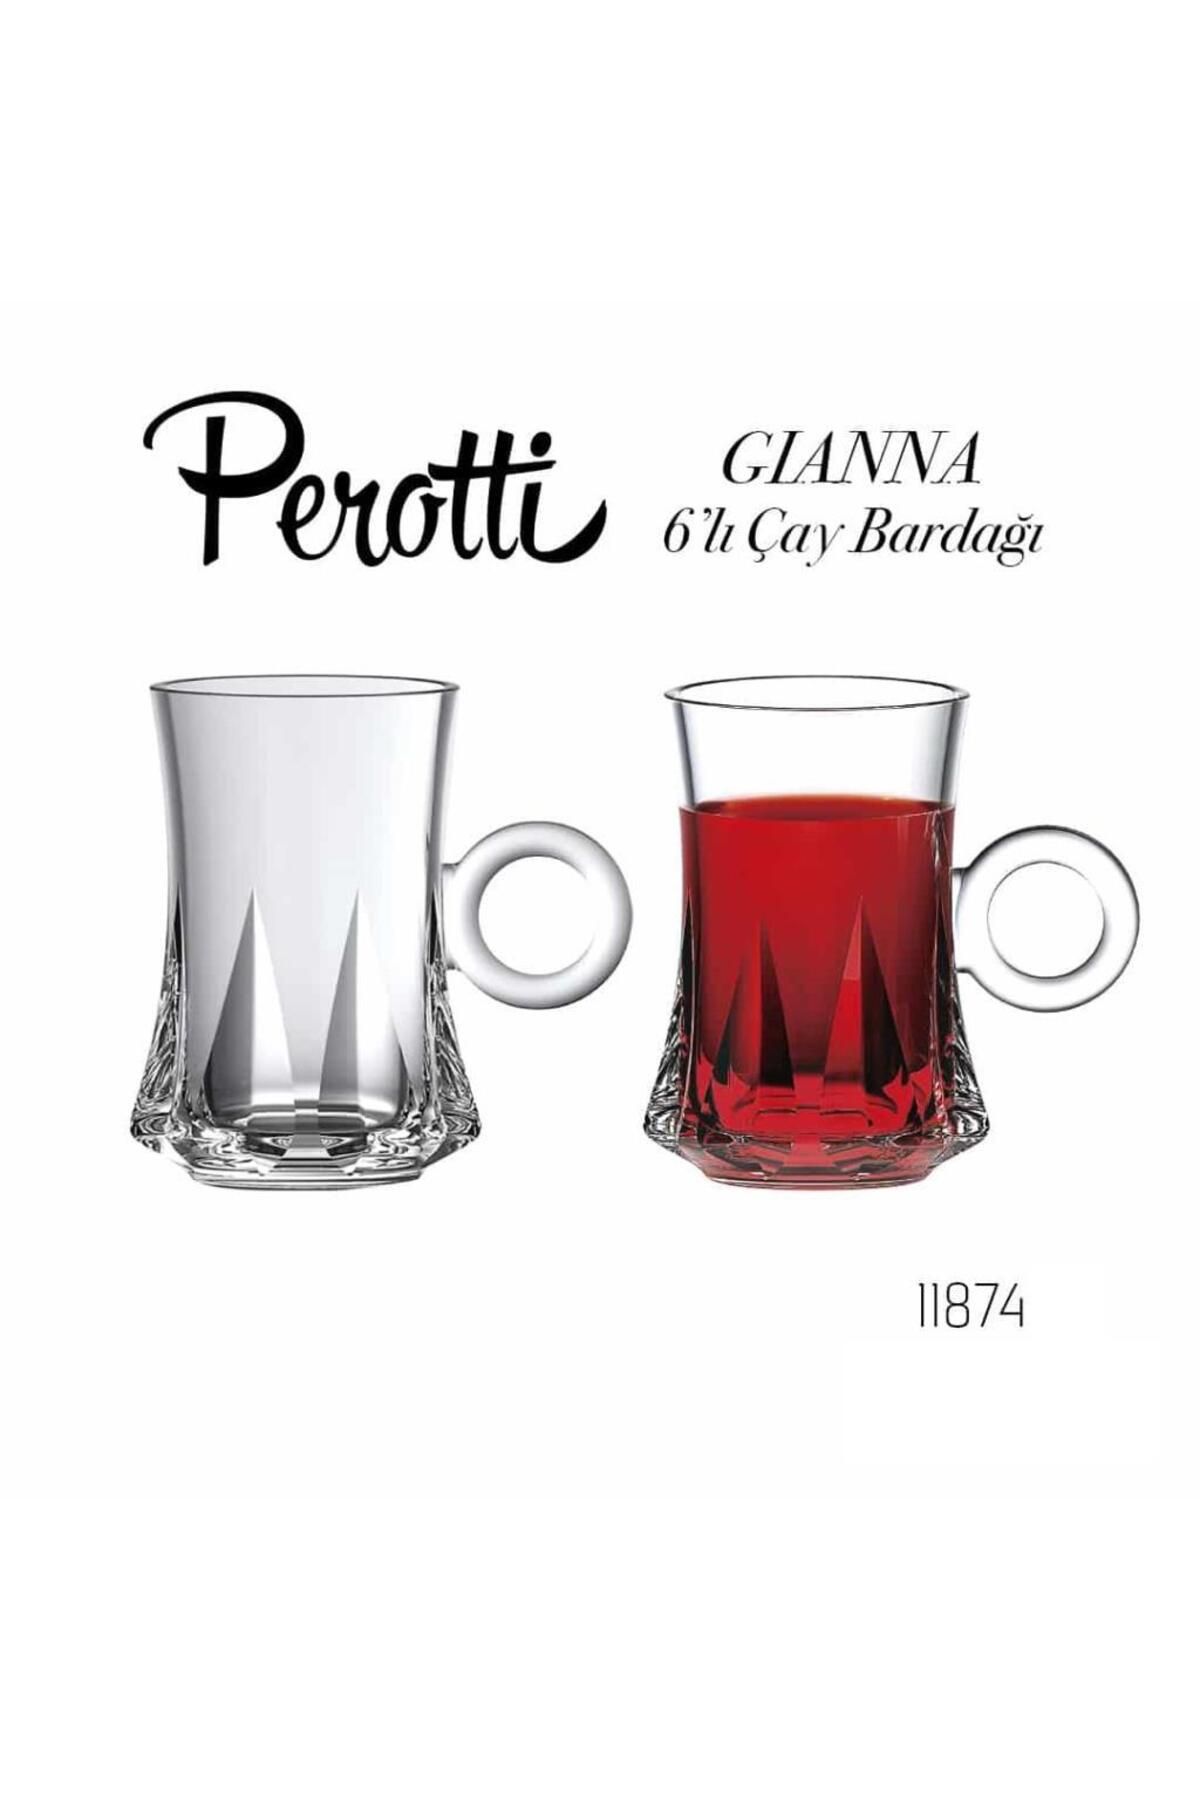 Perotti Gianna 6 Lı Çay Bardağı 11874